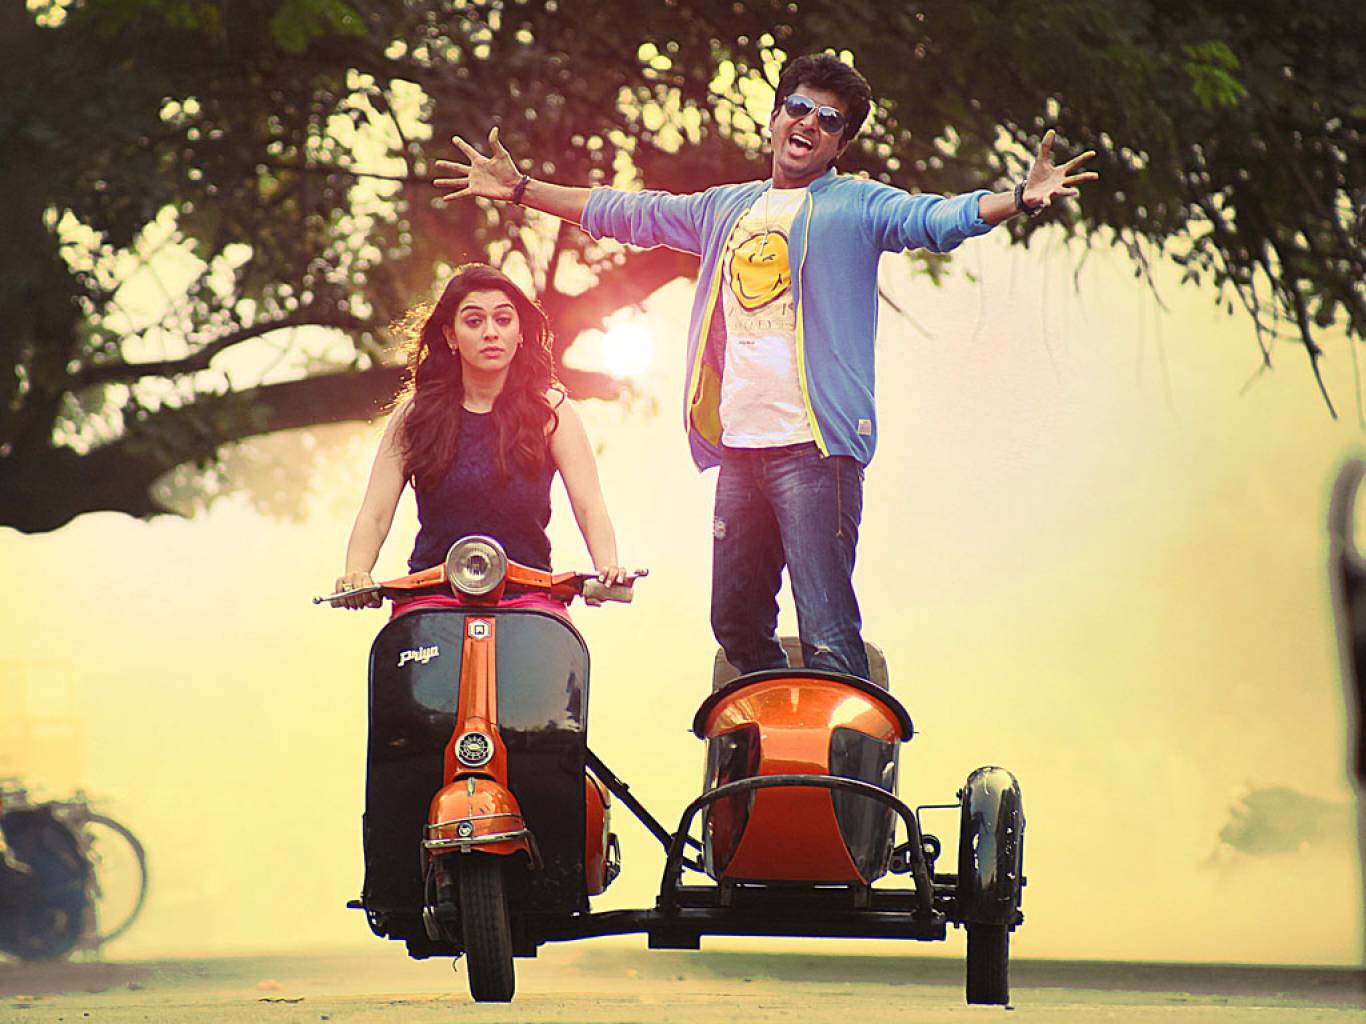 film tamil sfondi hd 1080p,veicolo,veicolo a motore,bicicletta,divertimento,triciclo